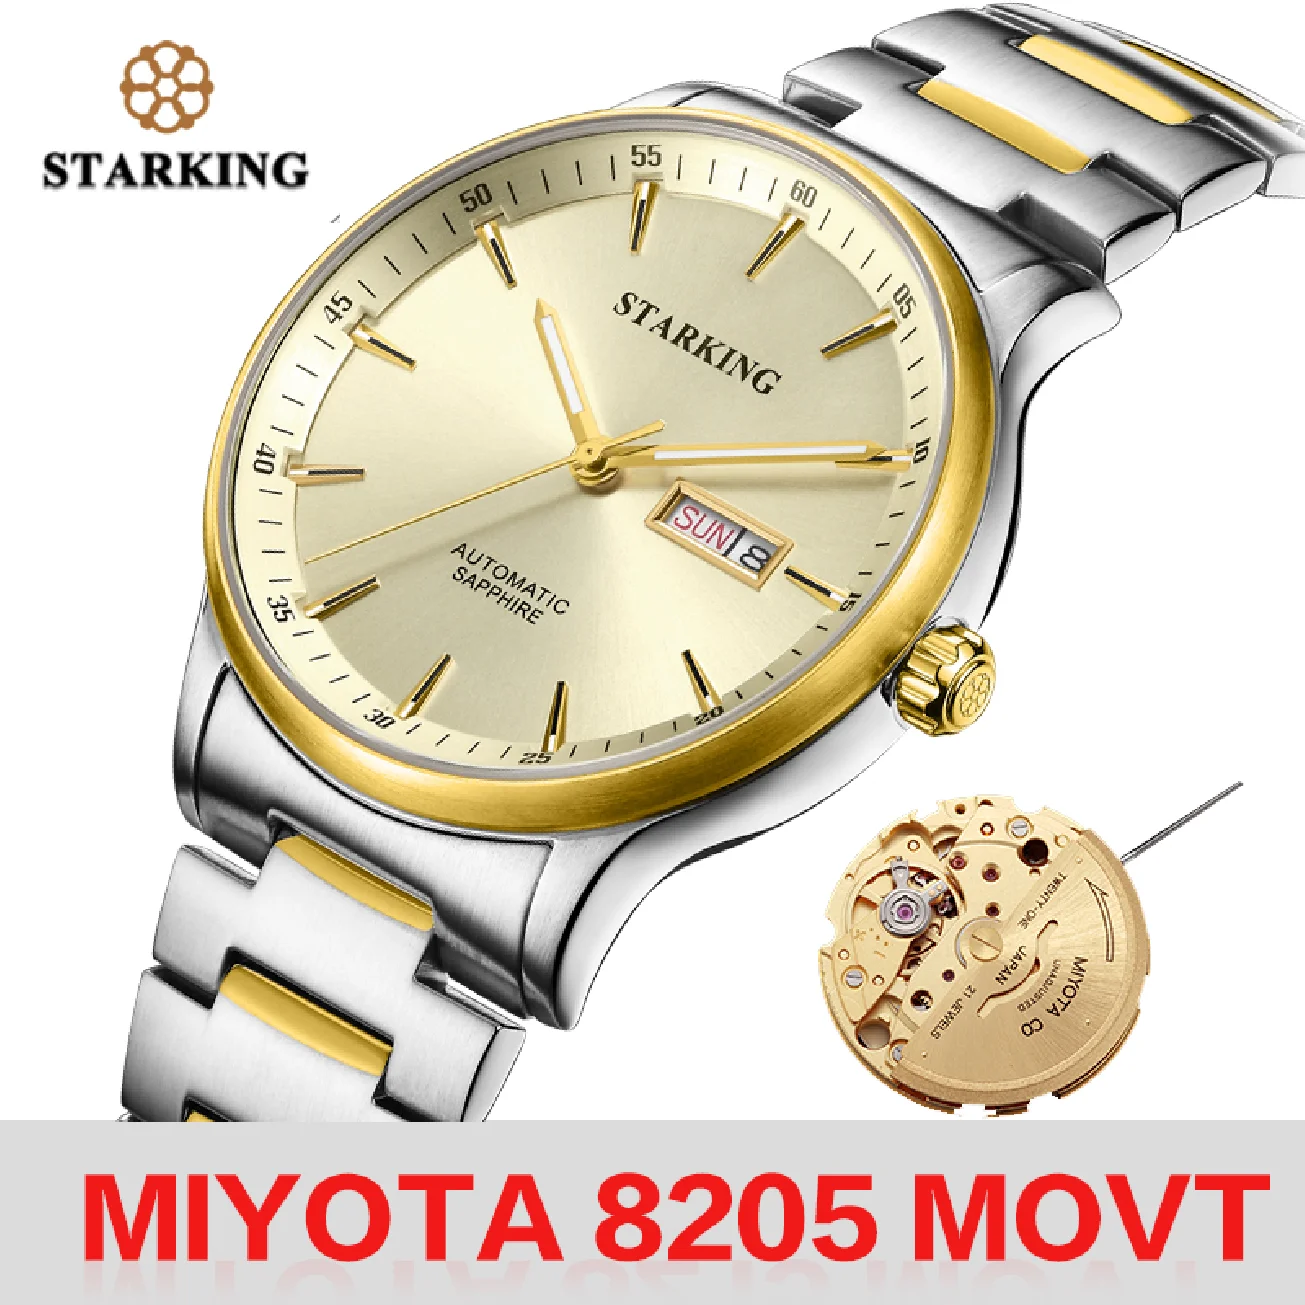 

STARKING Men Mechanical Watch Miyota 8205 Movt Automatic Self-wind Wristwatch For Men's Waterproof Sapphire Calendar Watches New